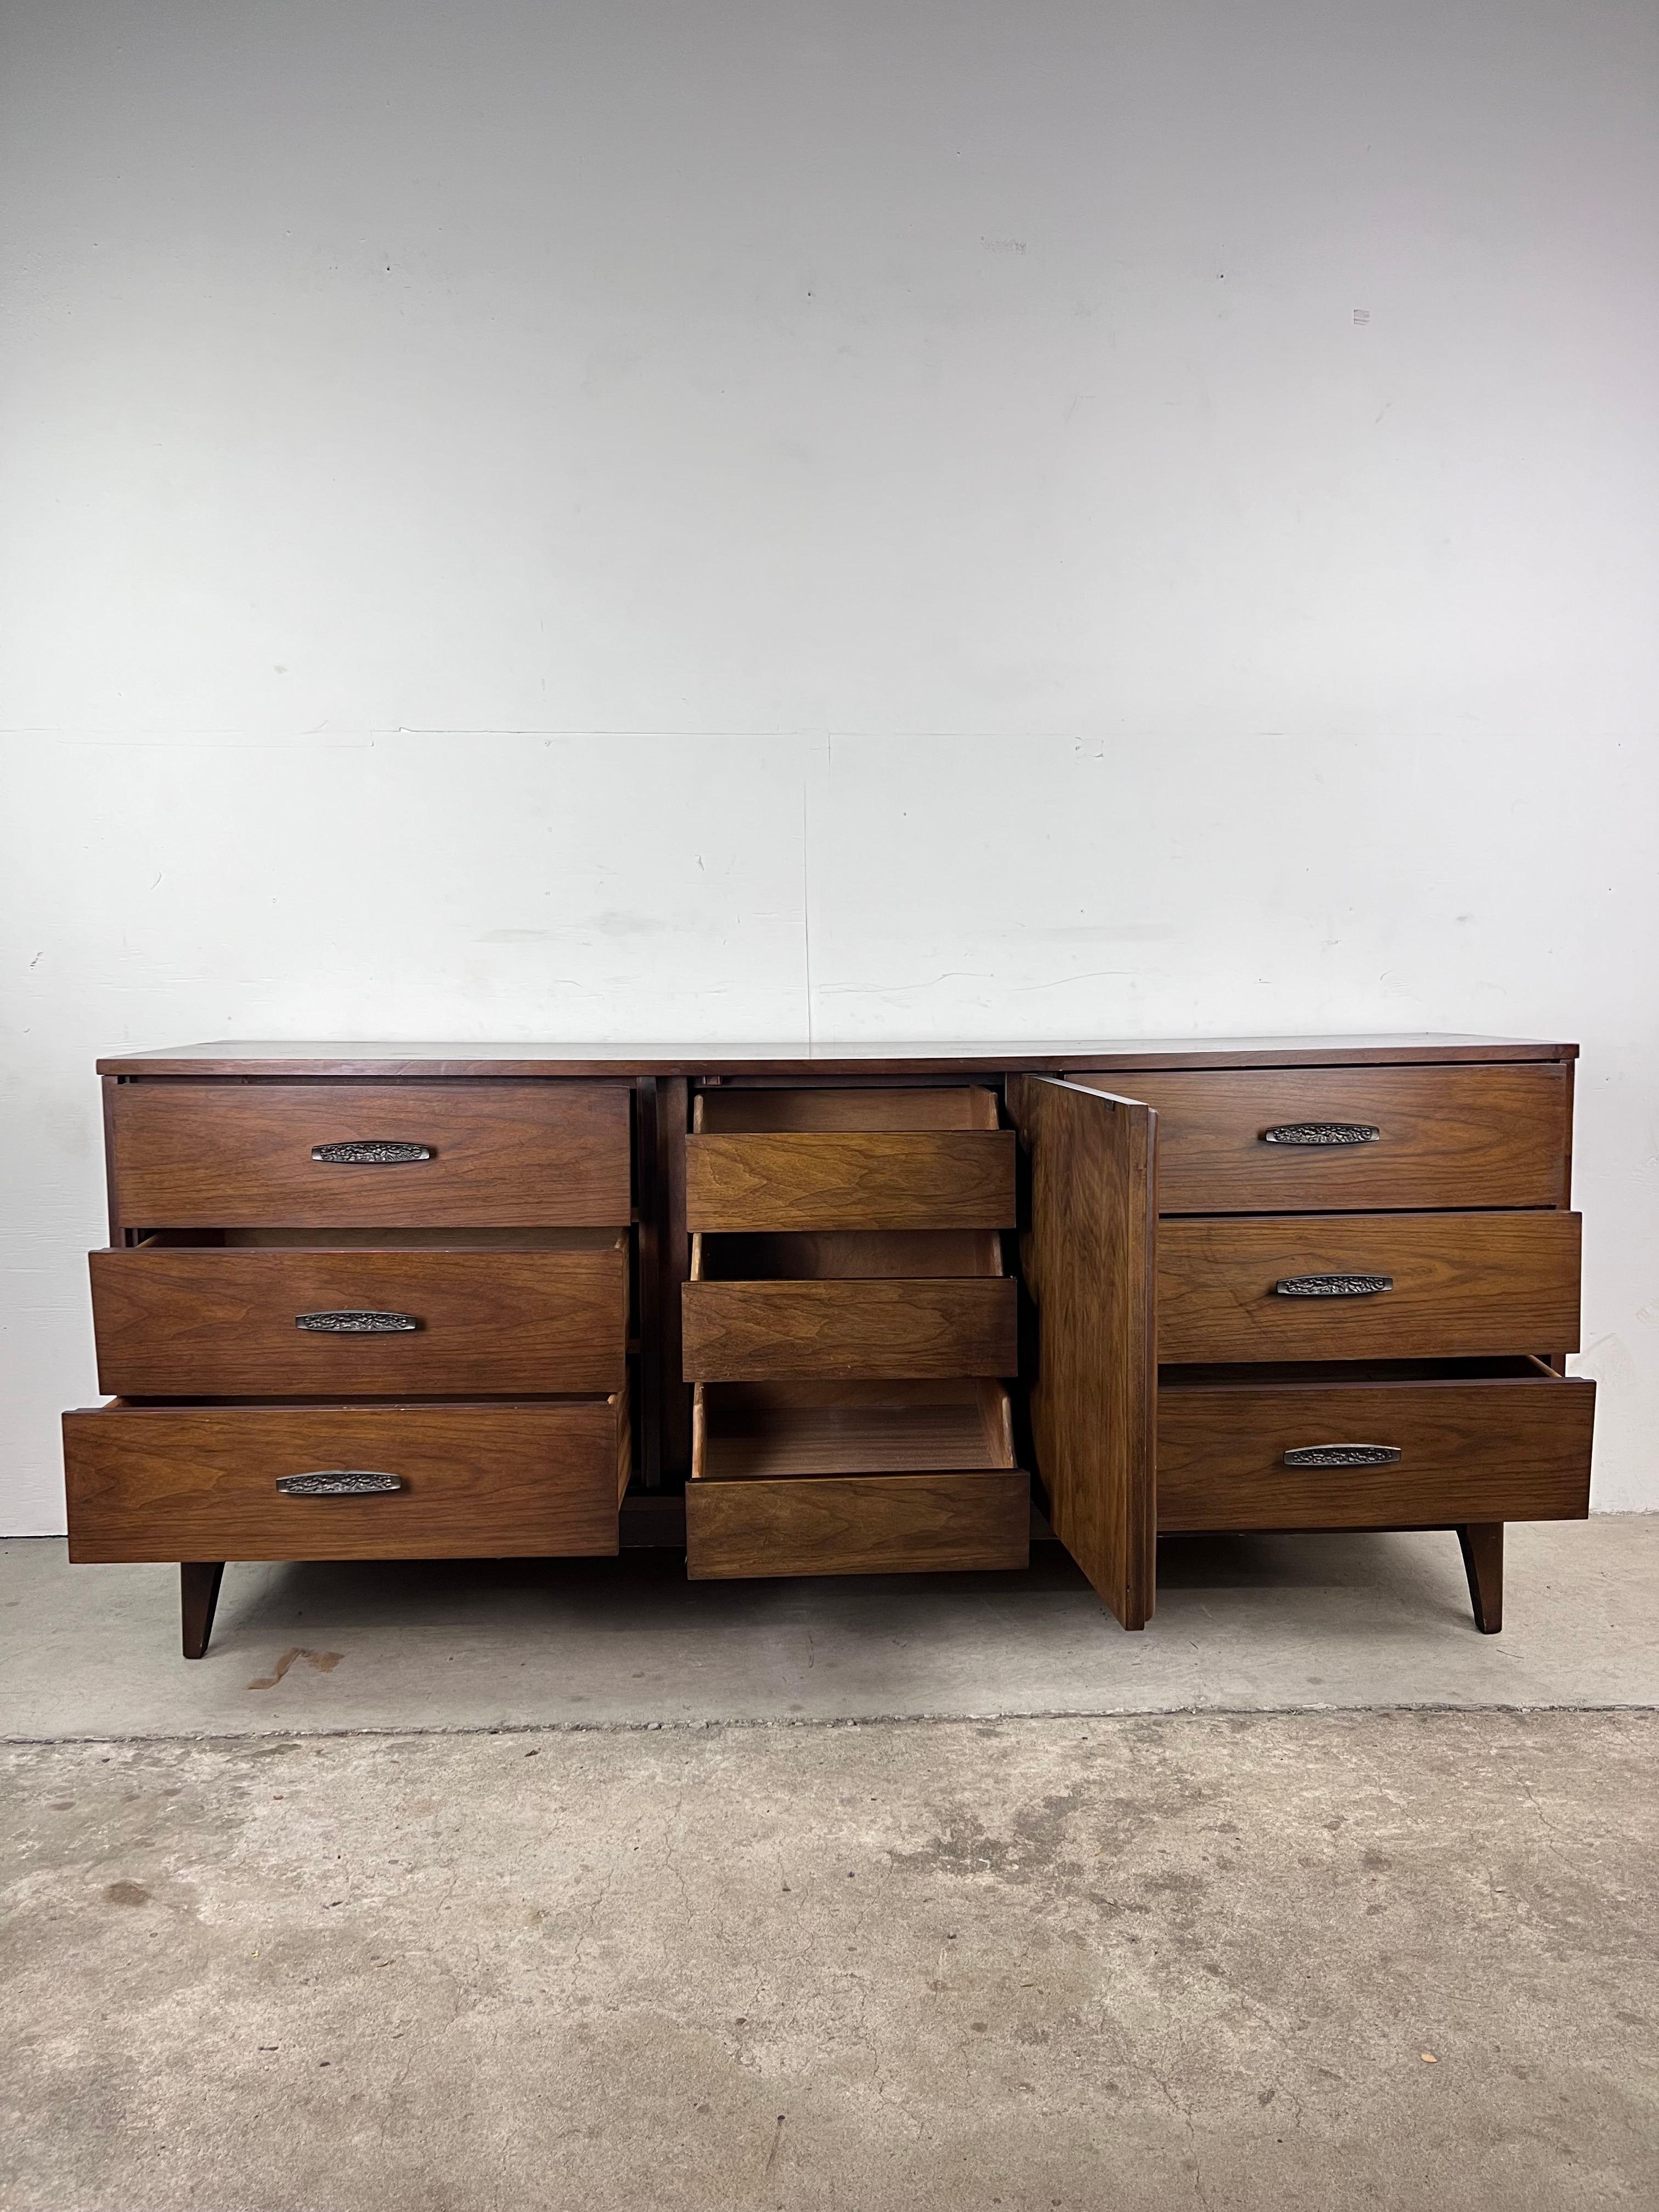 American Mid-Century Modern Lowboy 9 Drawer Dresser with Brass Hardware